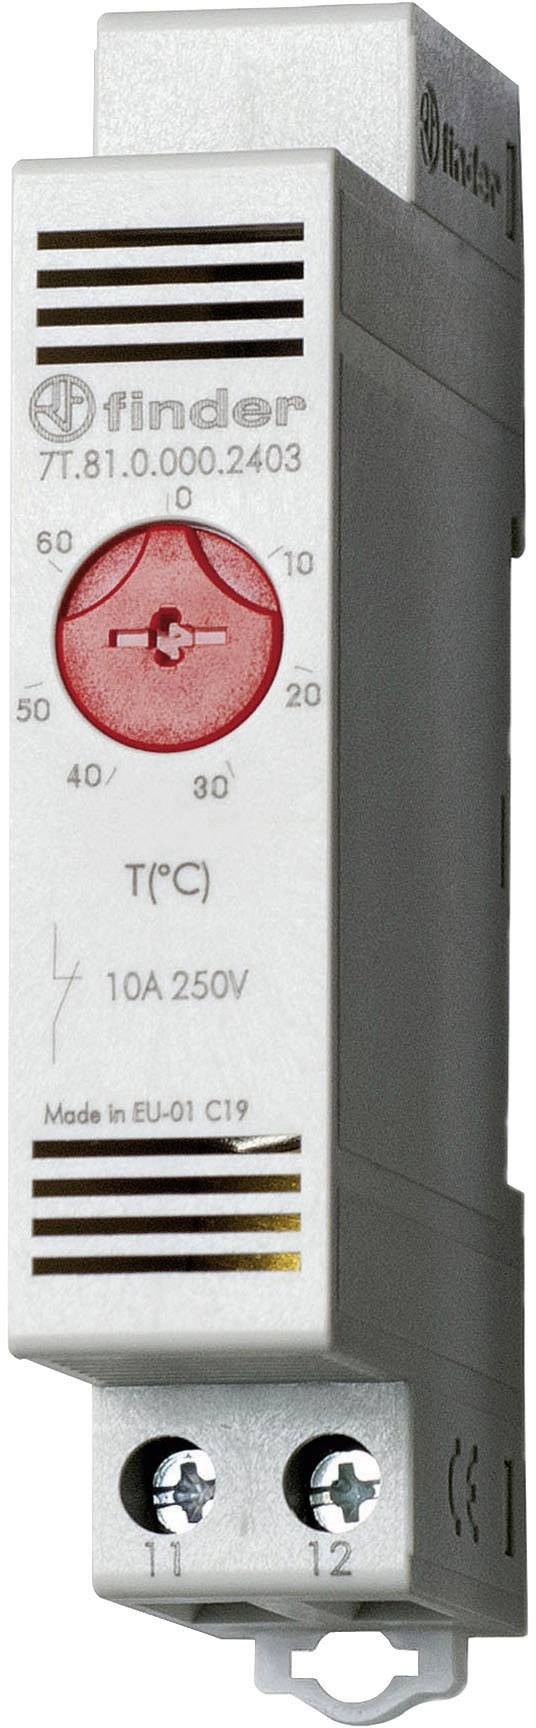 L x Finder Schaltschrankheizungs-Thermostat 7T.81.0.000.2403 250 V/AC 1 Öffner 